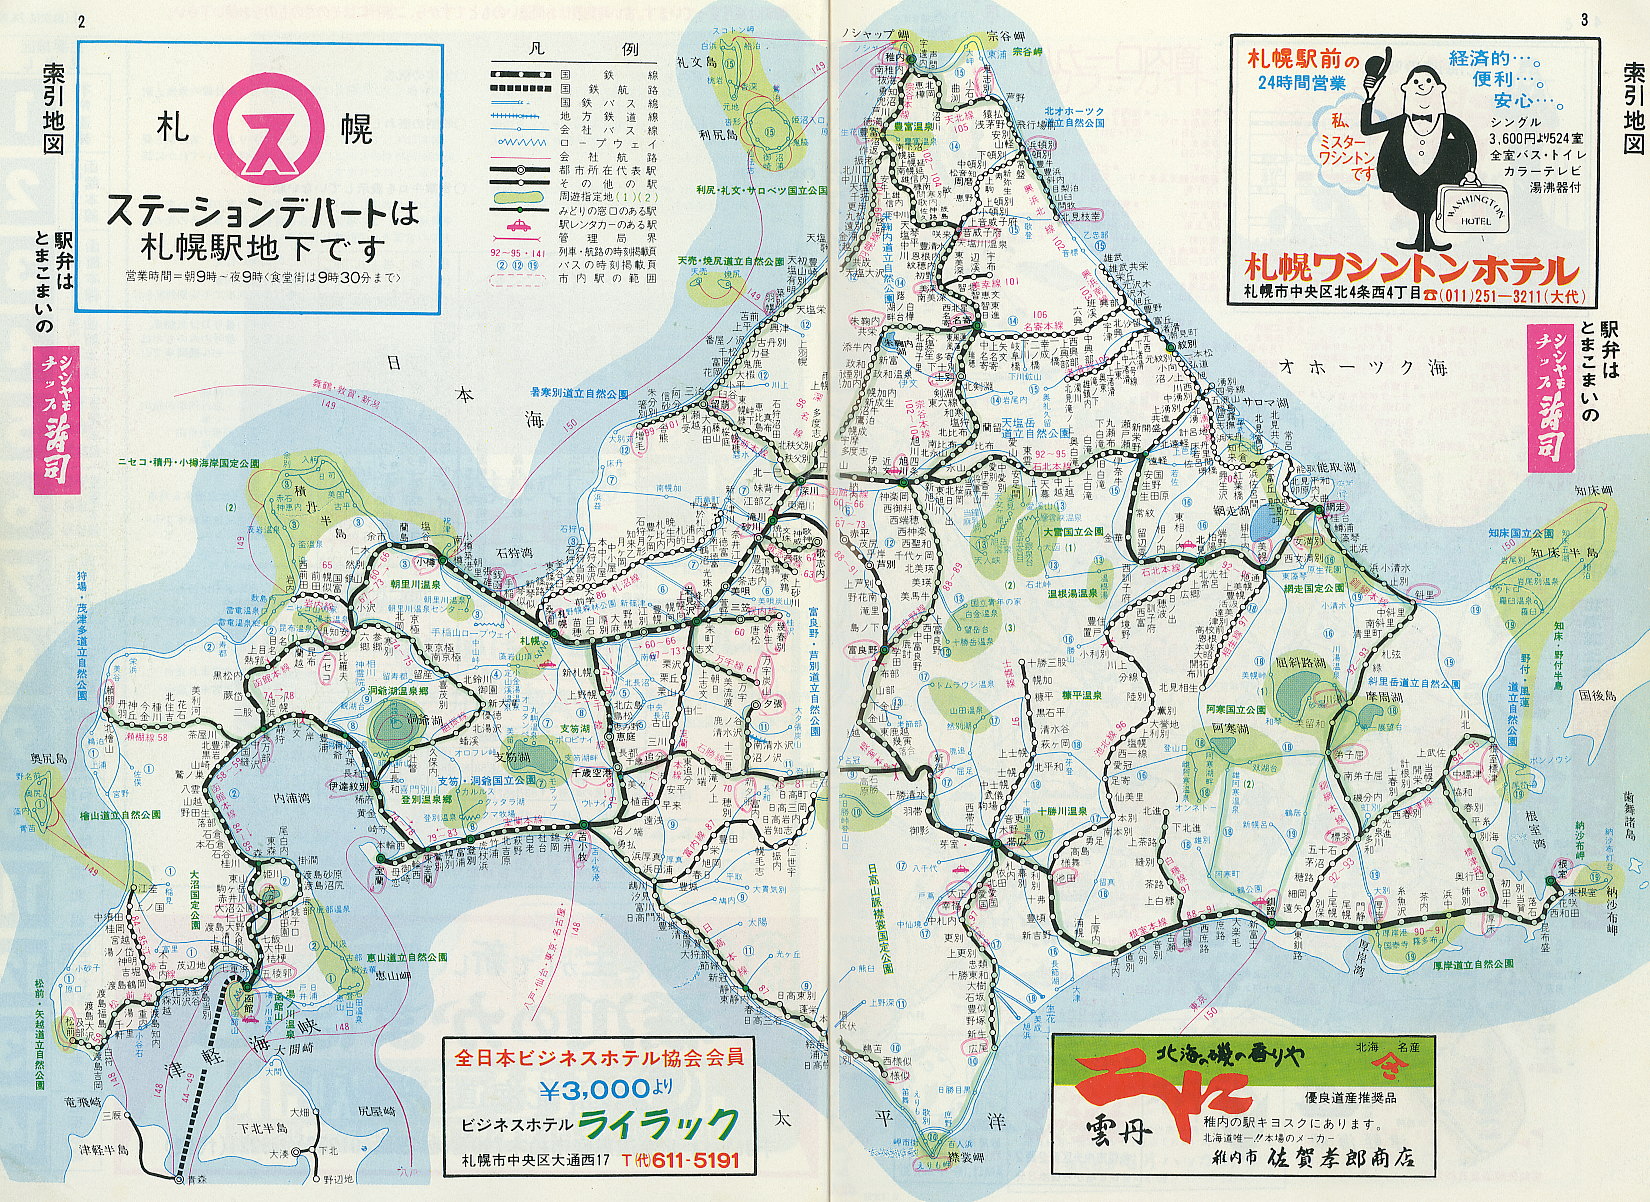 昔 の 北海道 の 路線 図 が 凄い